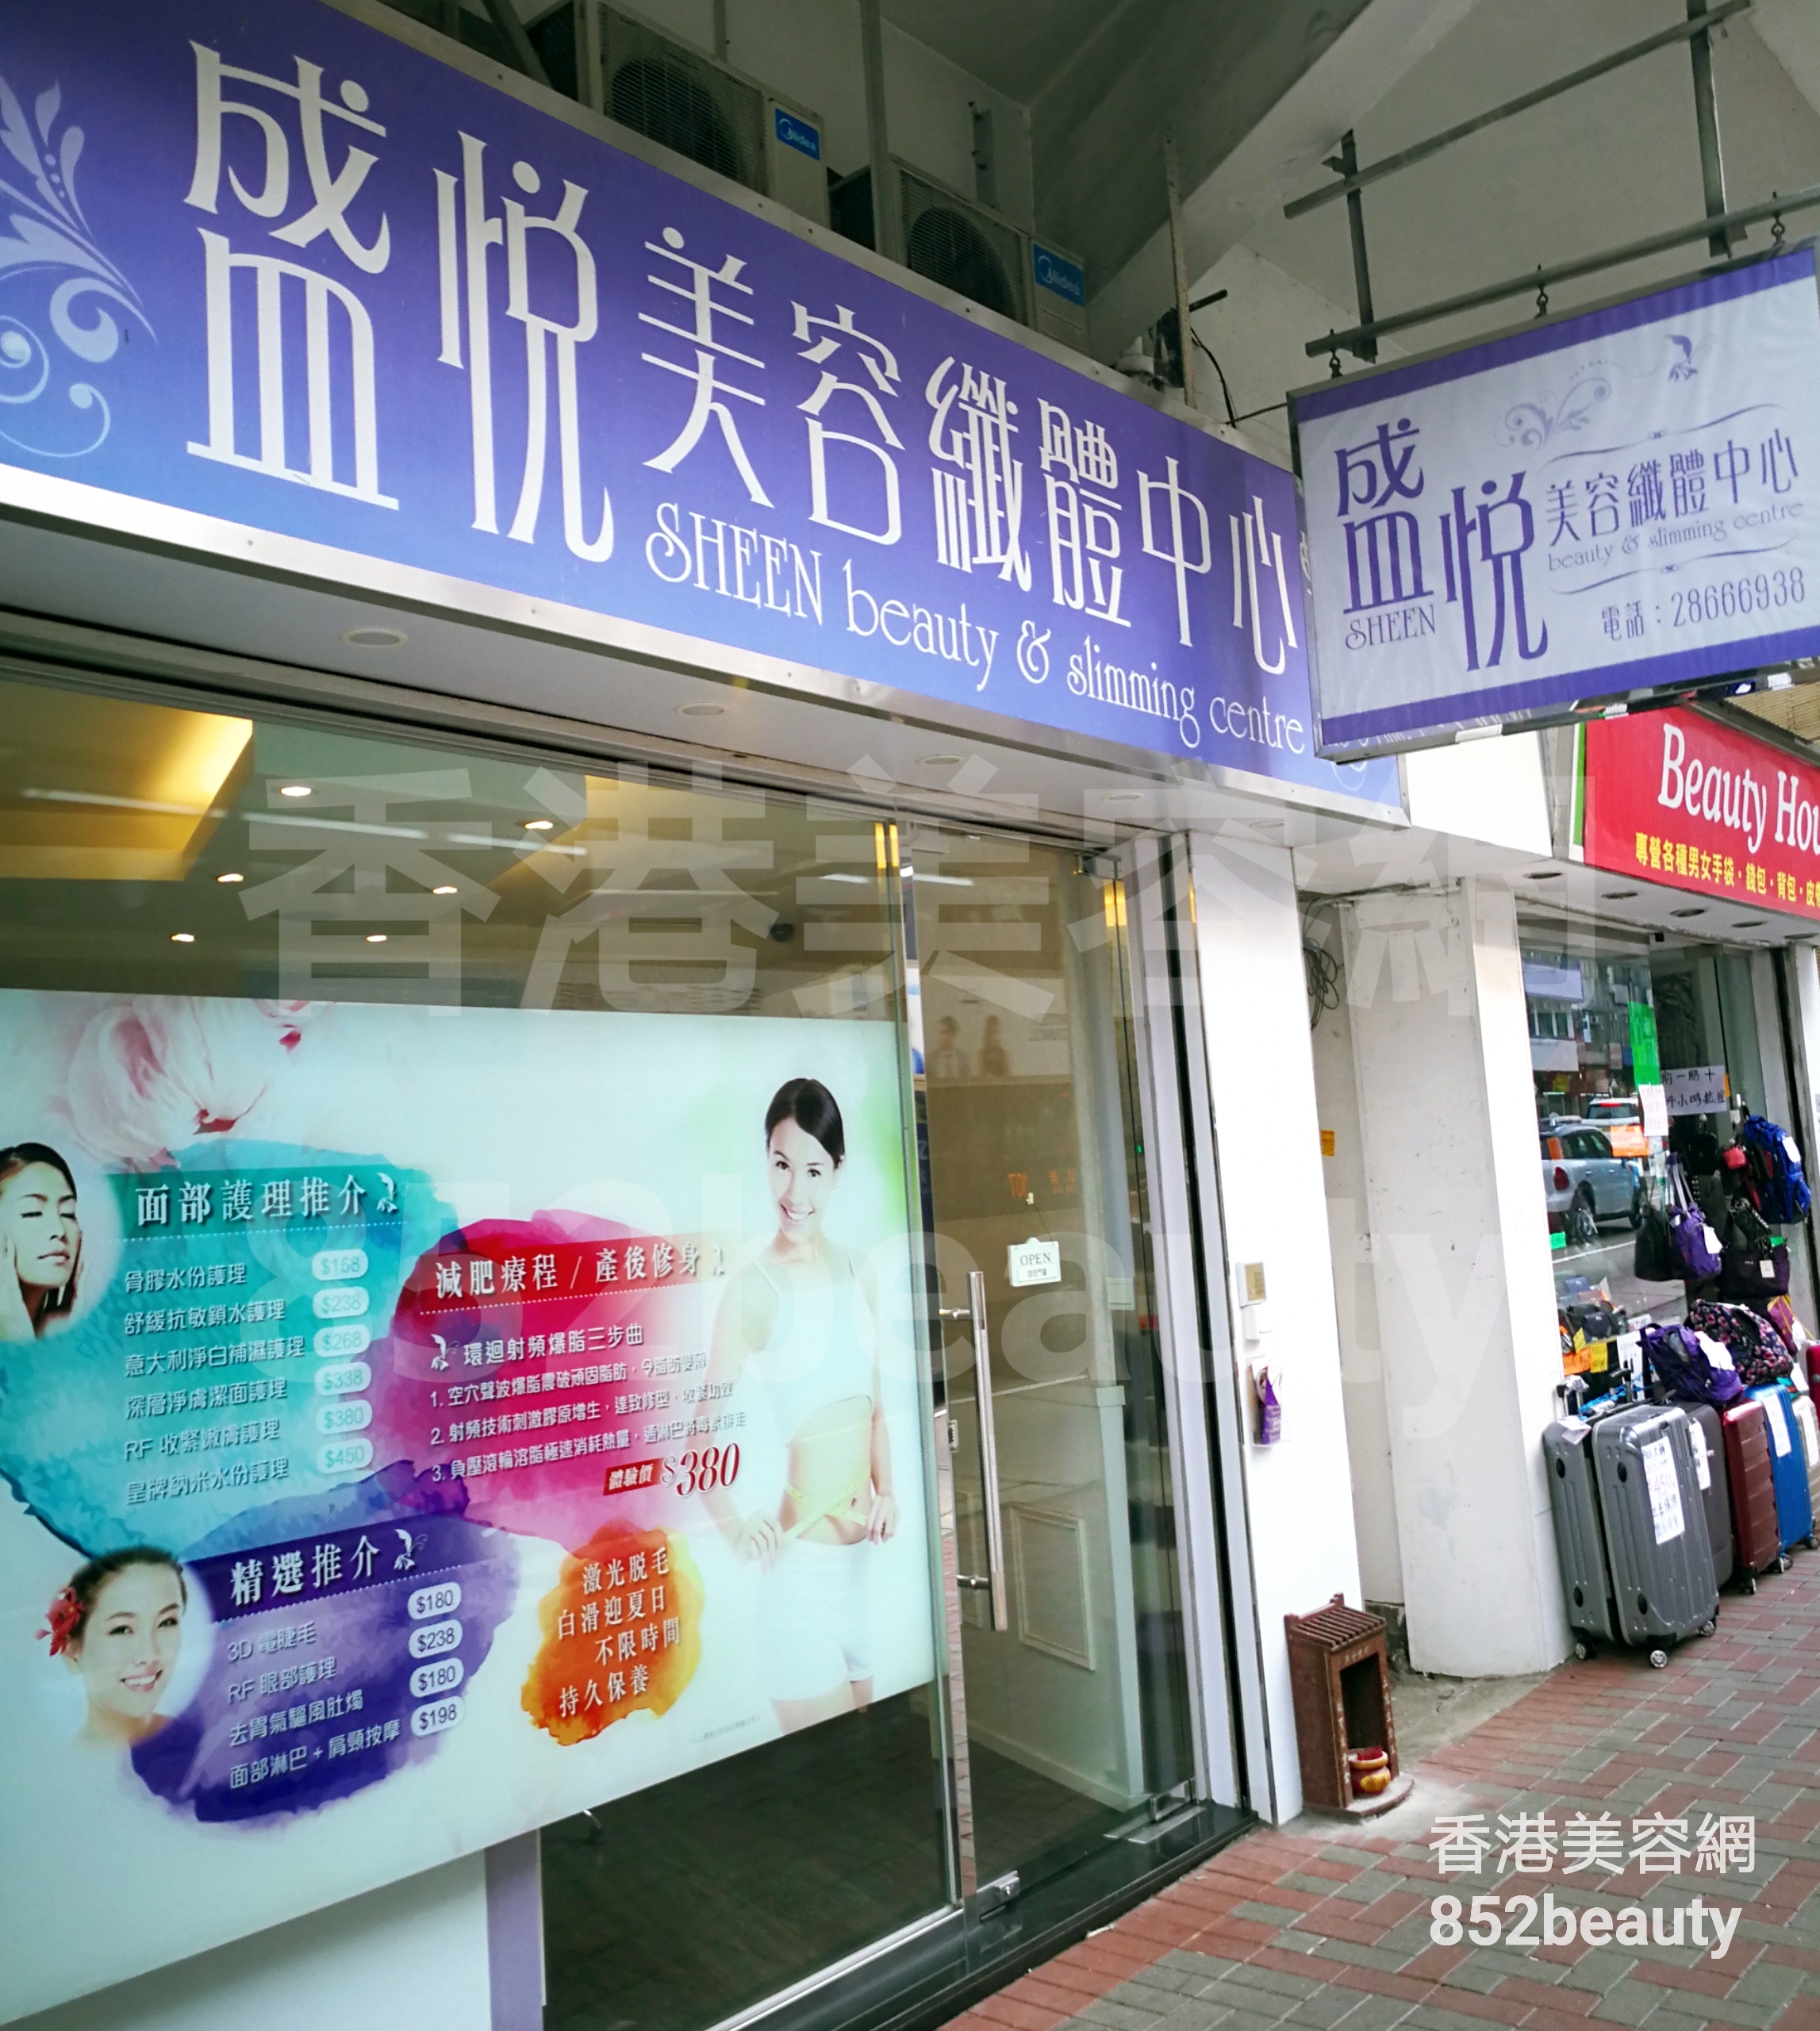 香港美容網 Hong Kong Beauty Salon 美容院 / 美容師: 盛悅美容纖體中心